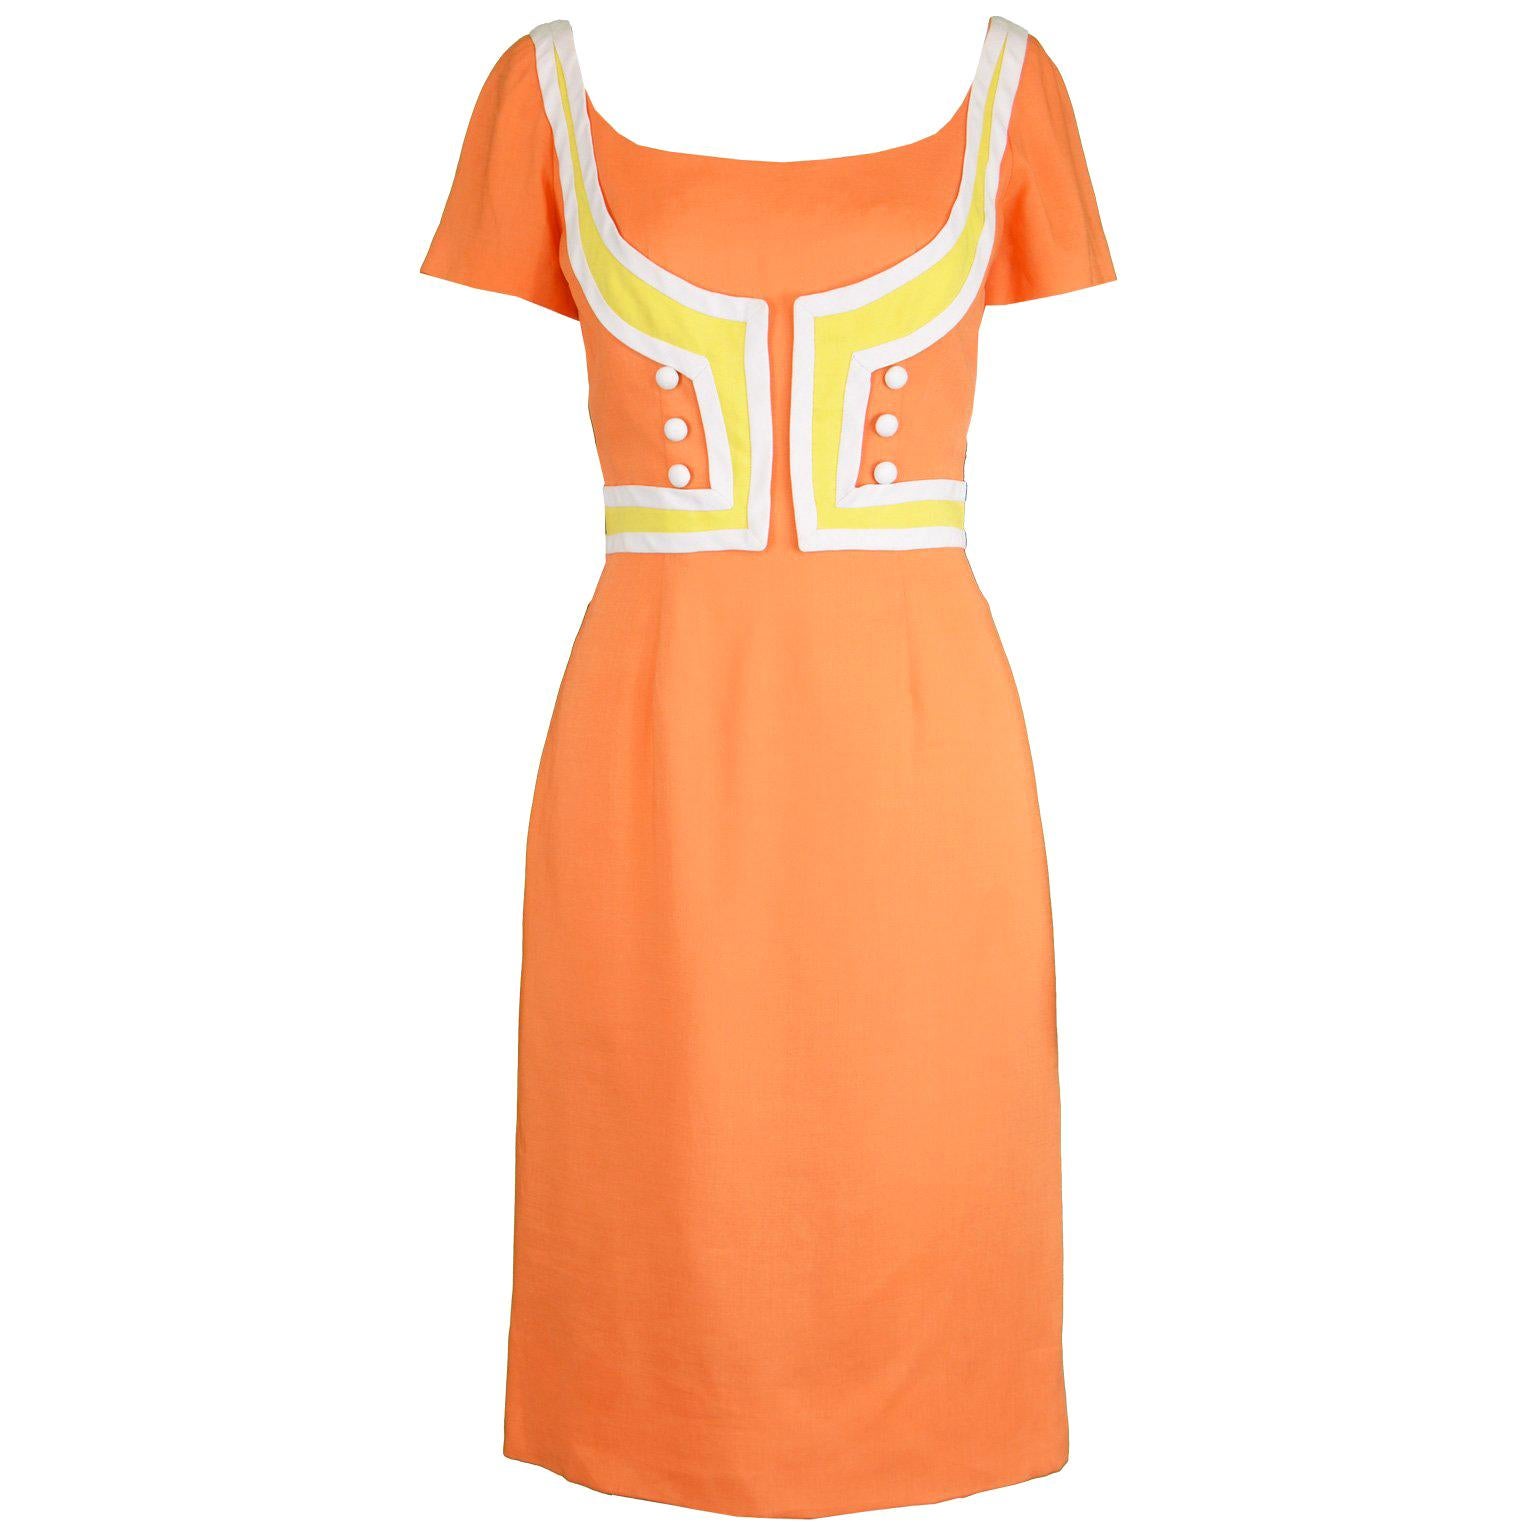 Oleg Cassini Vintage Orange, White & Yellow Linen Short Sleeve Mod Dress, 1960s For Sale